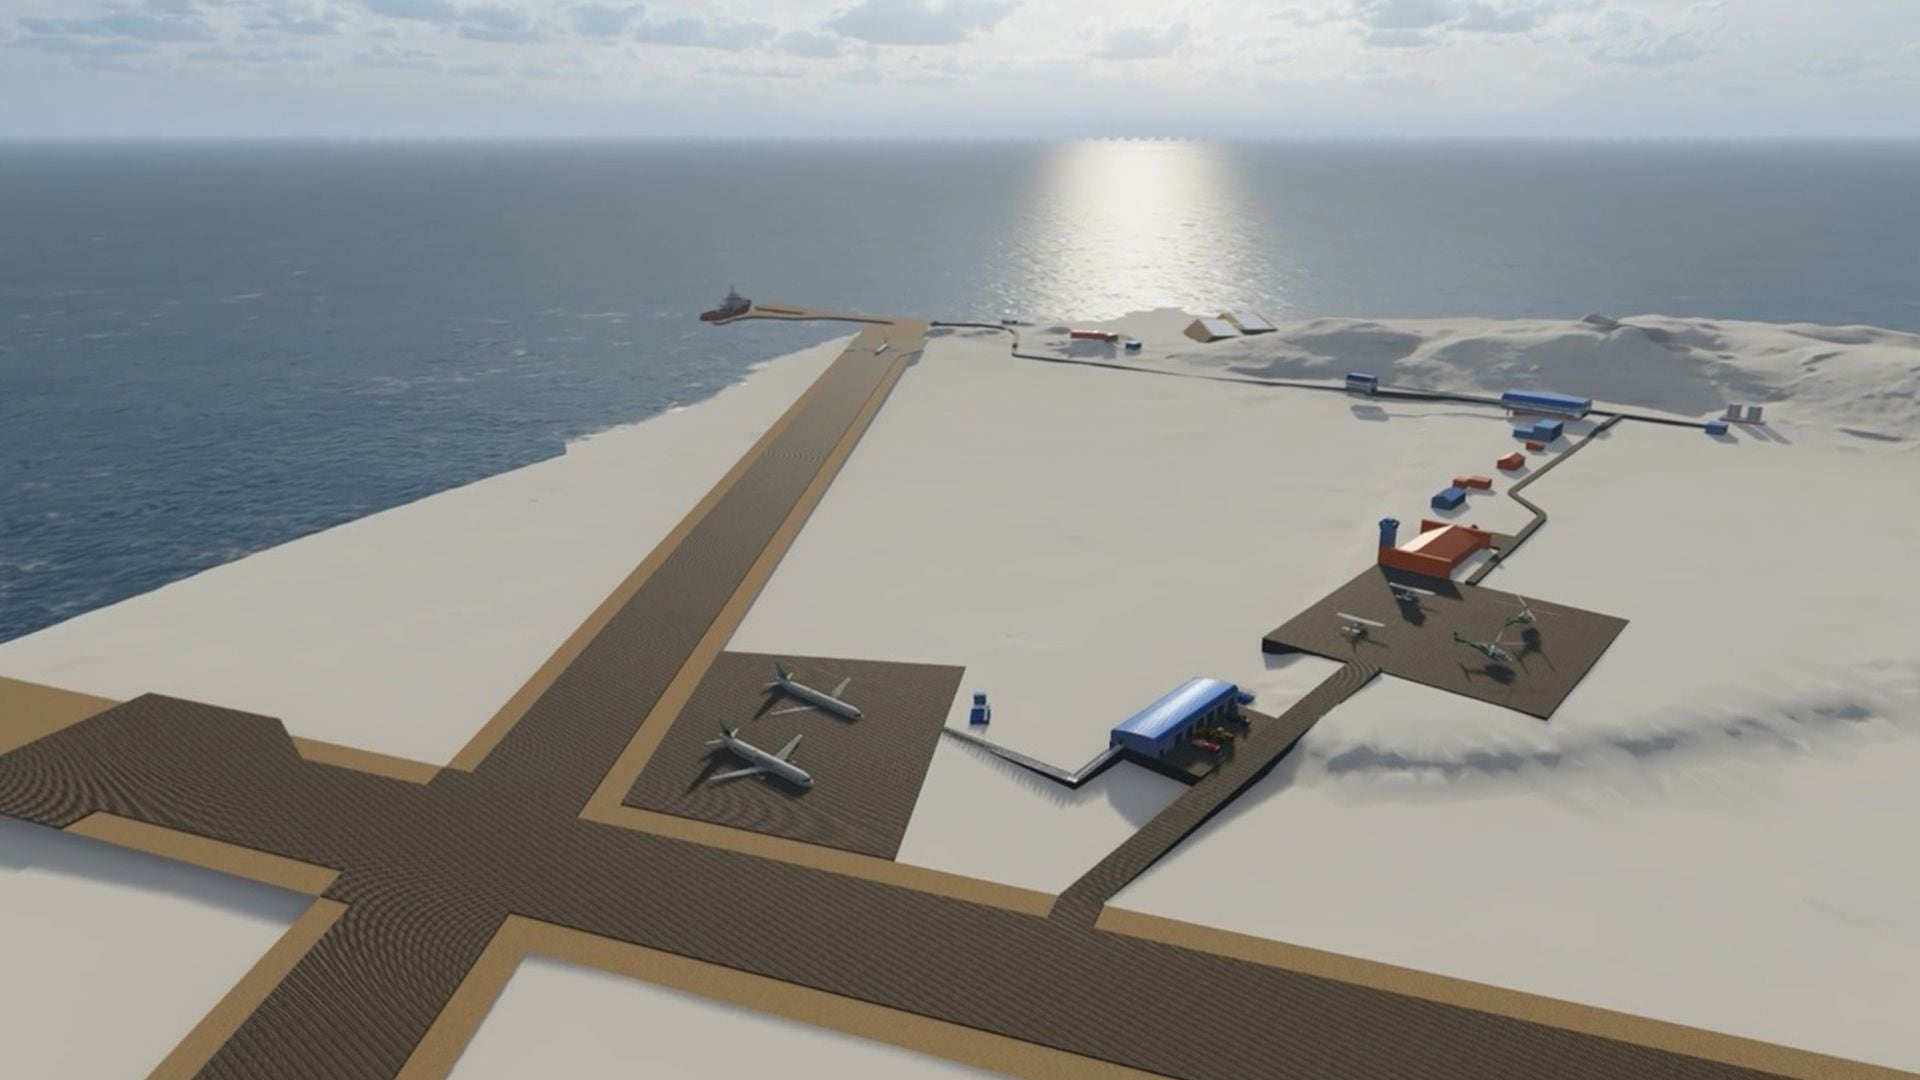 La base antártica Petrel se proyecta como una instalación científica estratégica porque contará con un muelle y dos pistas de aterrizaje que permitirán acceder de modo aéreo y marítimo al continente (Gentileza Martín Sakamoto)